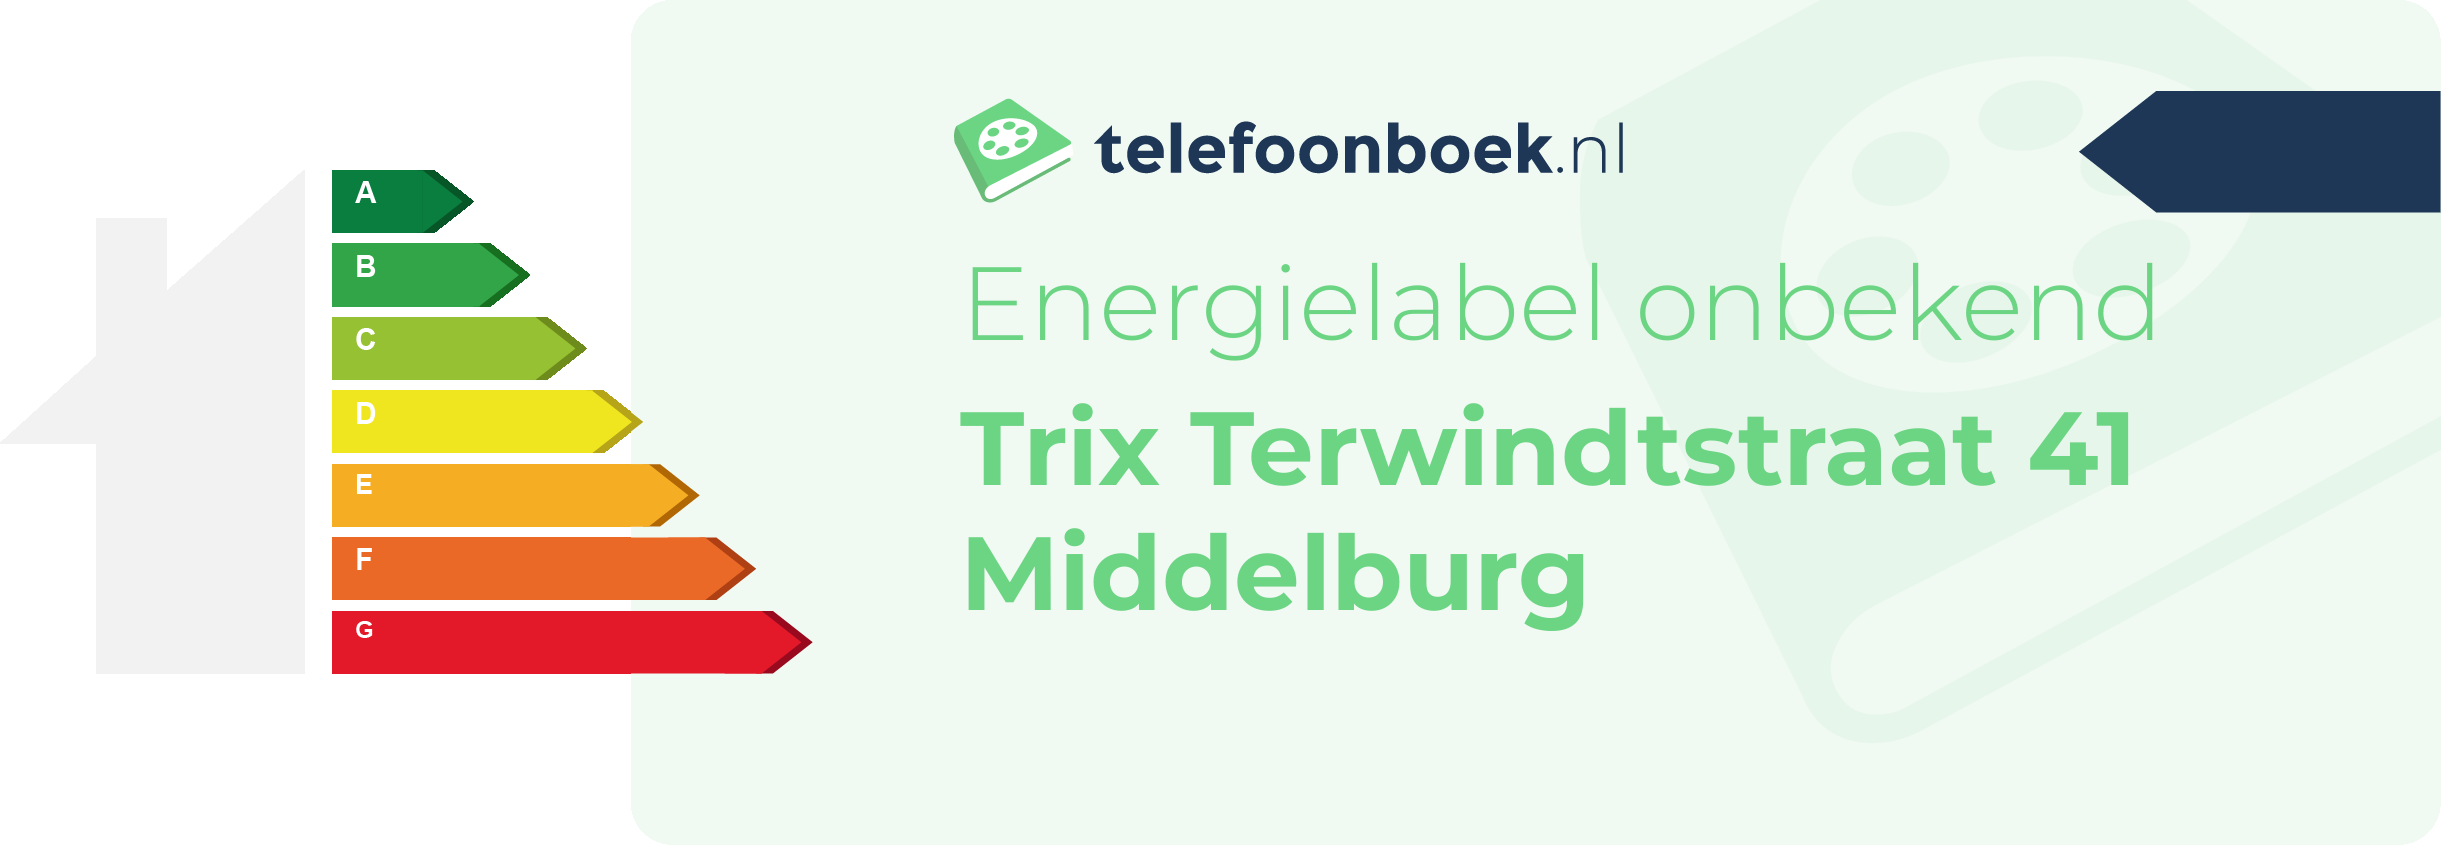 Energielabel Trix Terwindtstraat 41 Middelburg